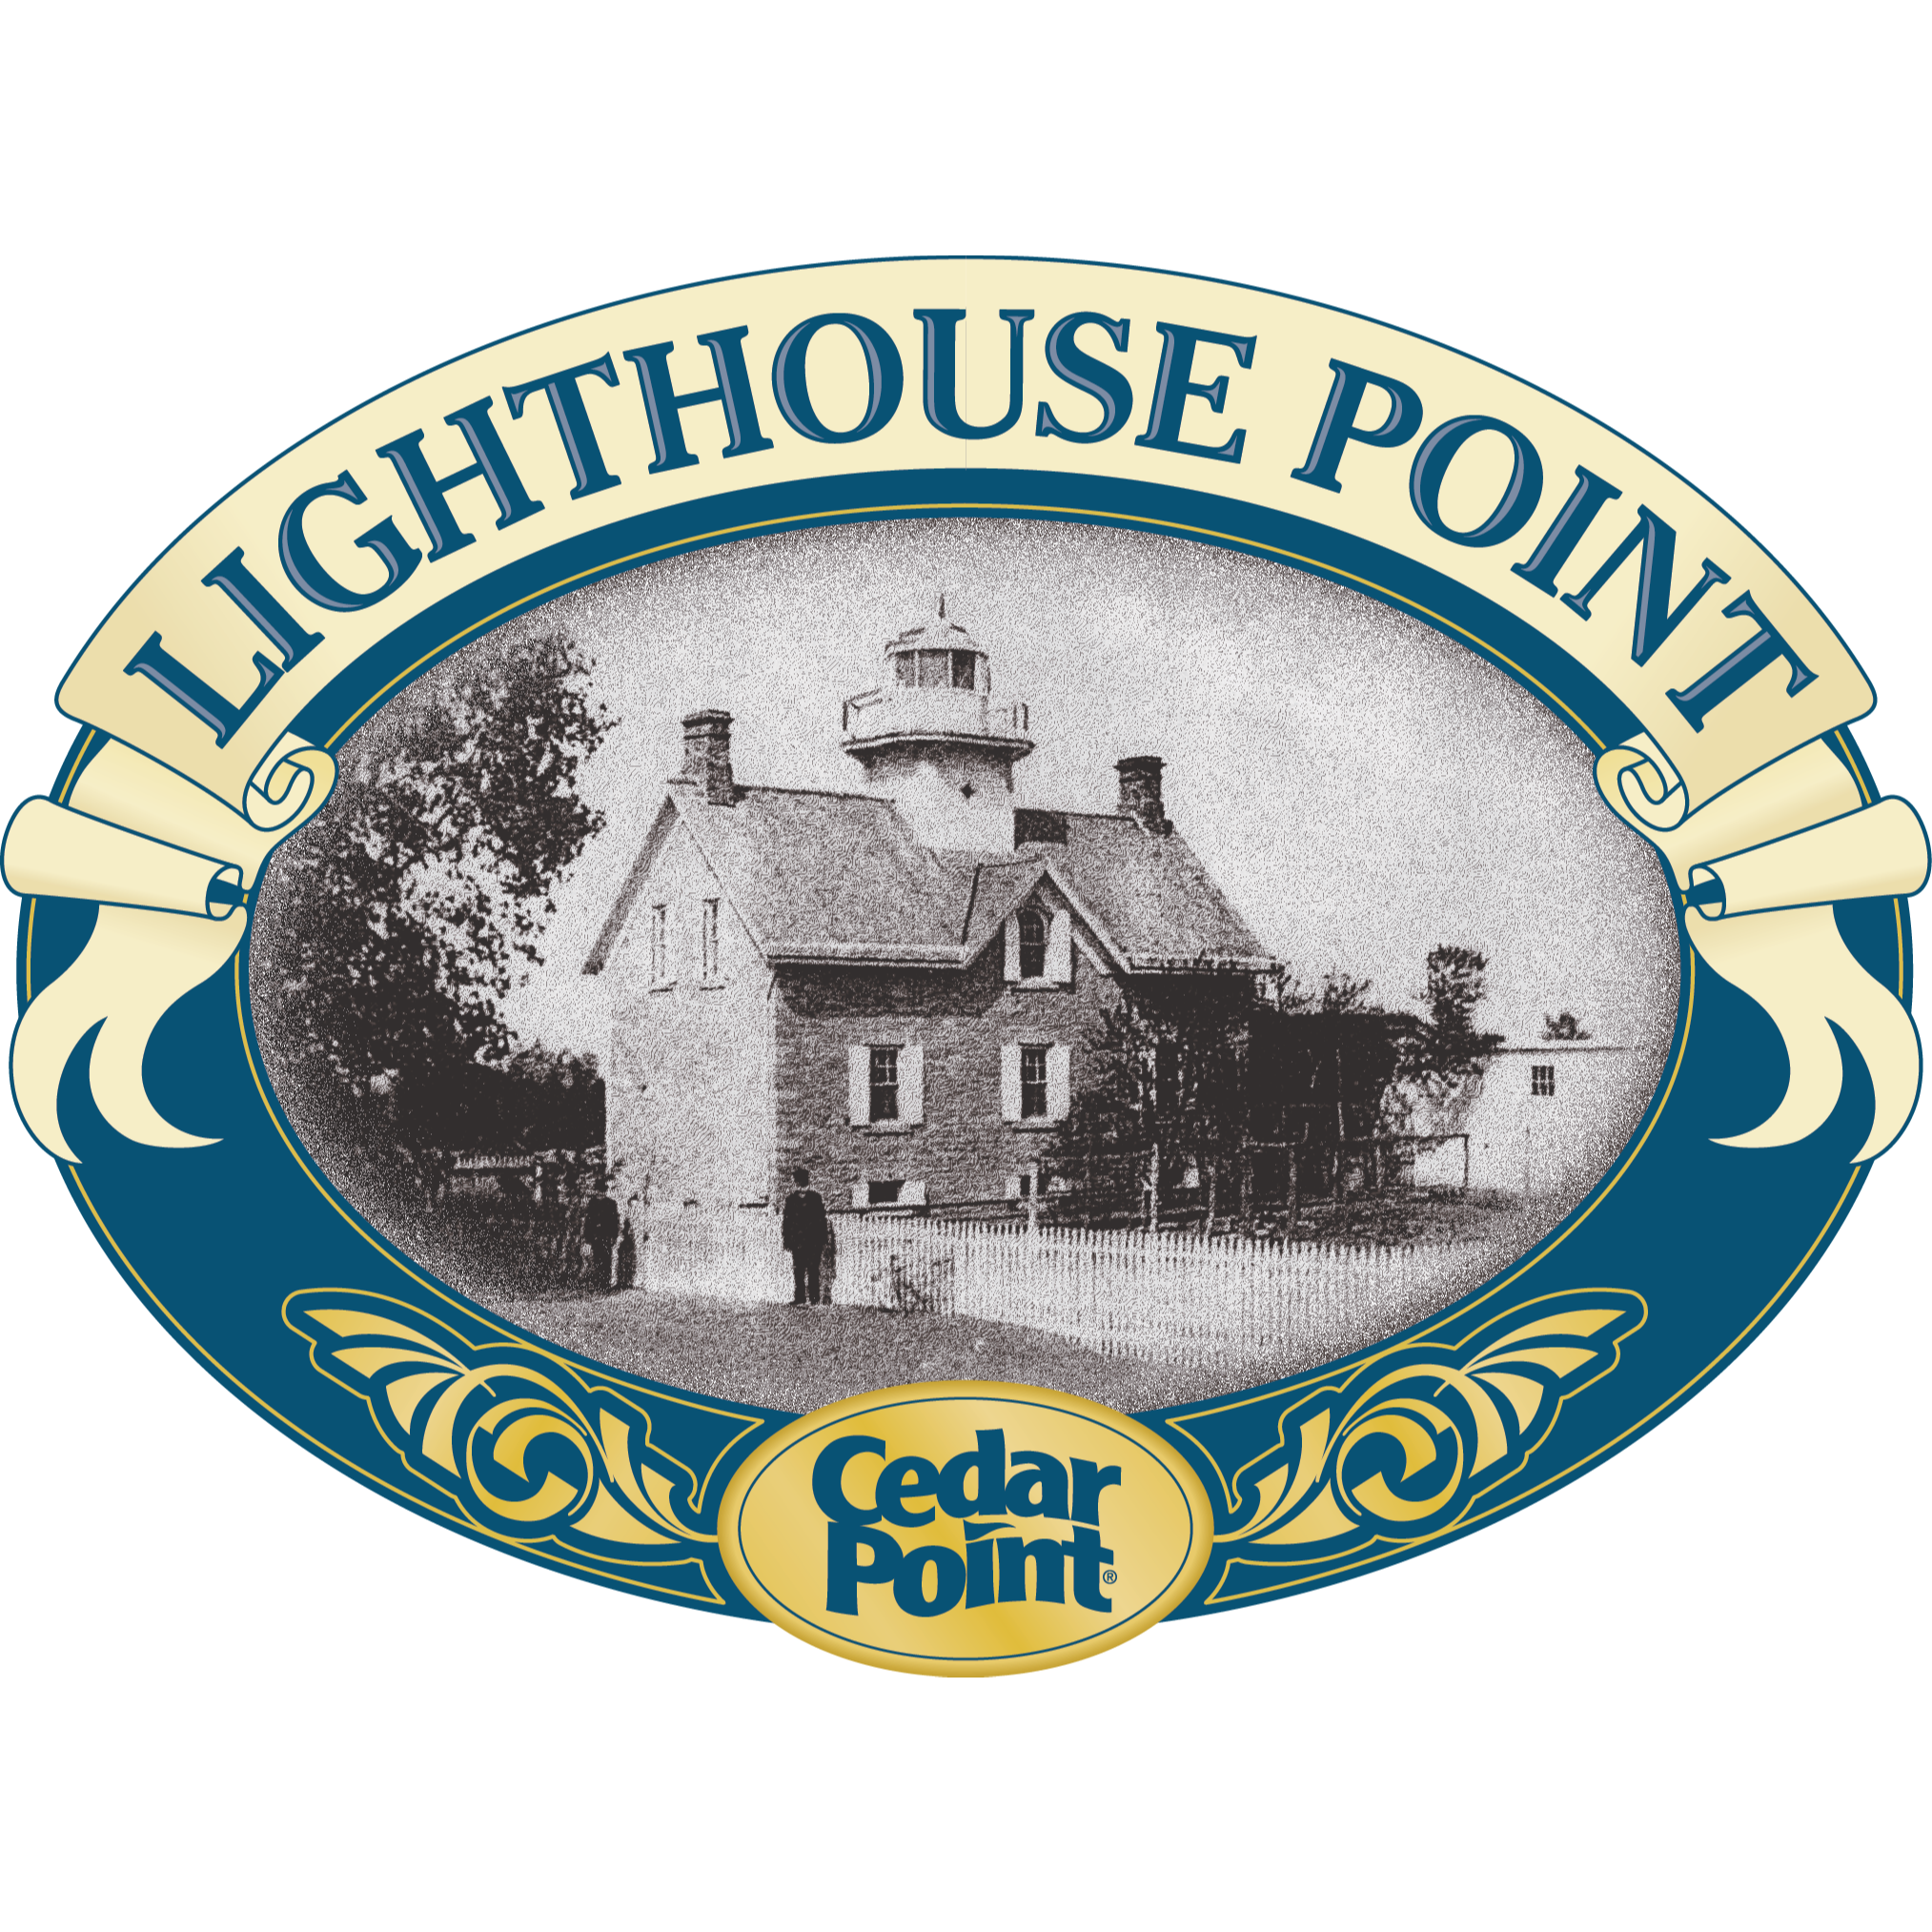 Cedar Point's Lighthouse Point